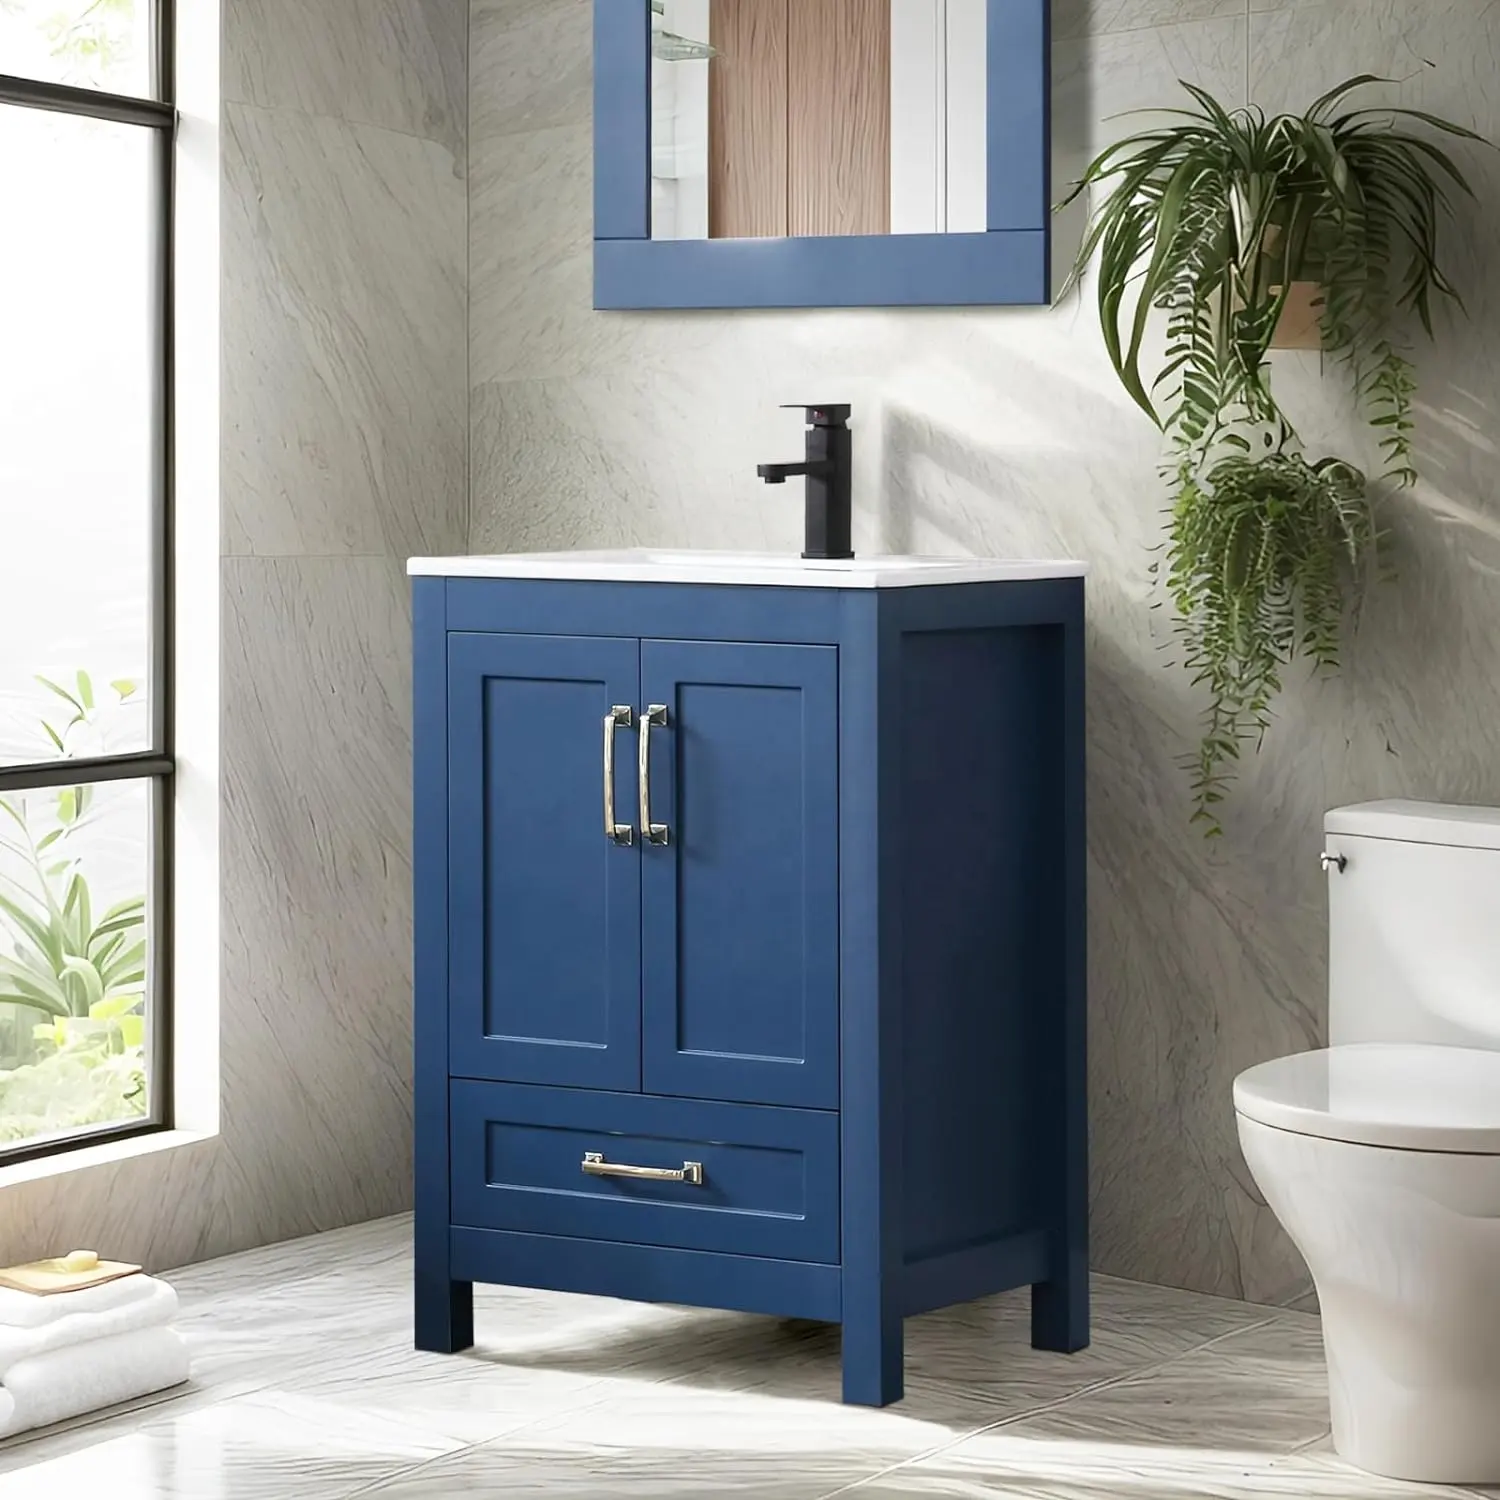 24 "블루 페인트 독립형 욕실 화장대 현대 목욕 화장대 캐비닛 24 인치 욕실 세면대